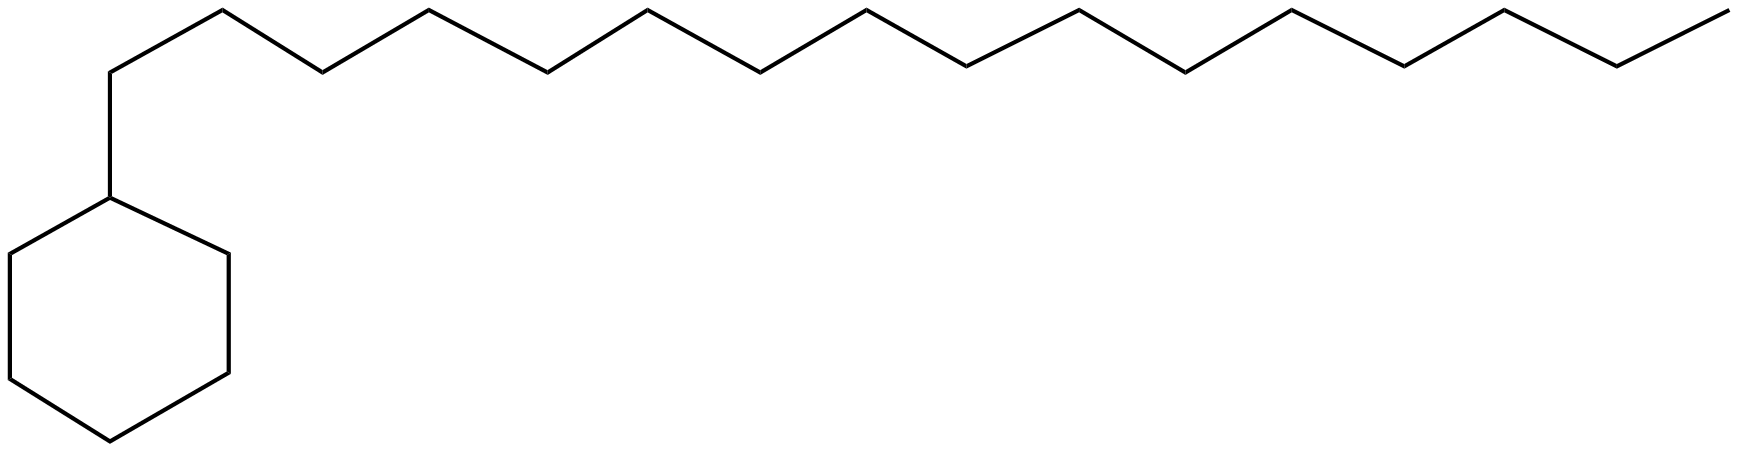 Image of hexadecylcyclohexane